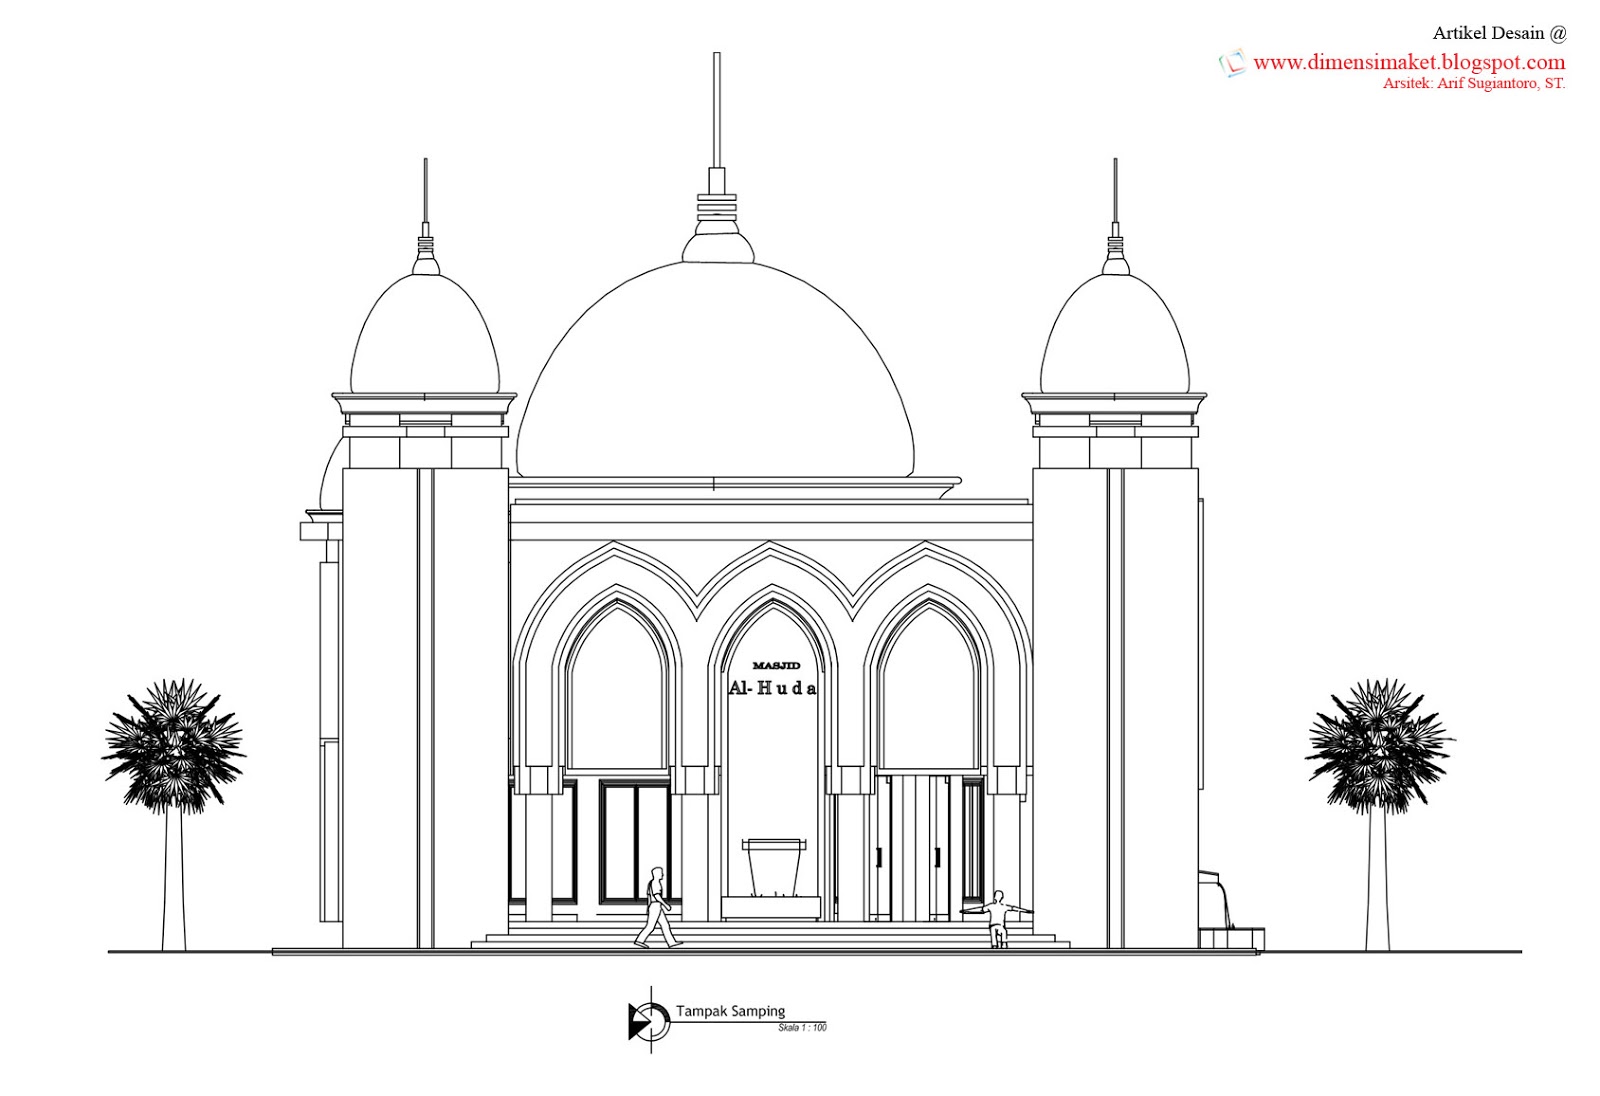 Desain Masjid & Musholla 010 : Perencanaan Masjid Al-Huda 